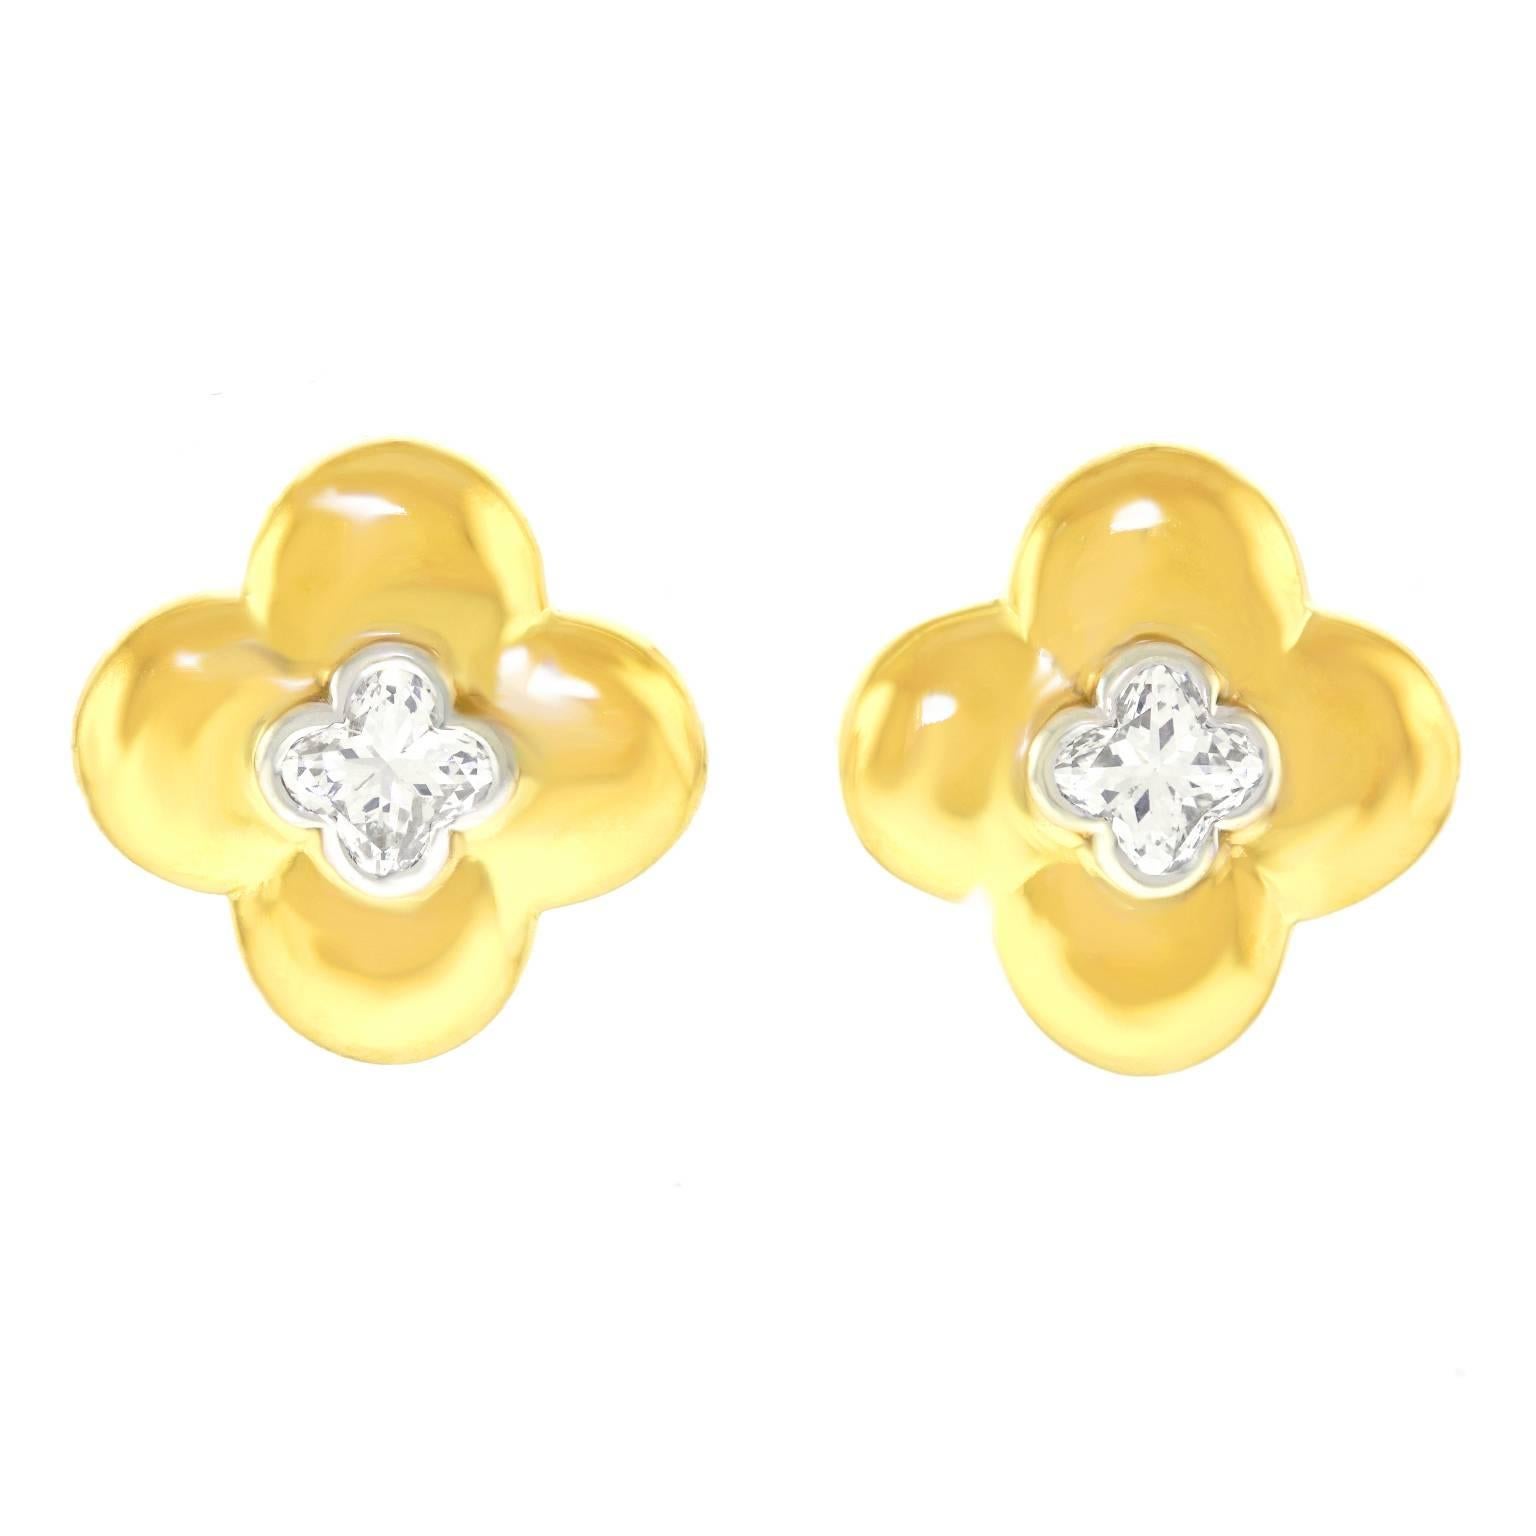 Stunning Clover-Cut Diamonds in Gold Clover Motif Earrings